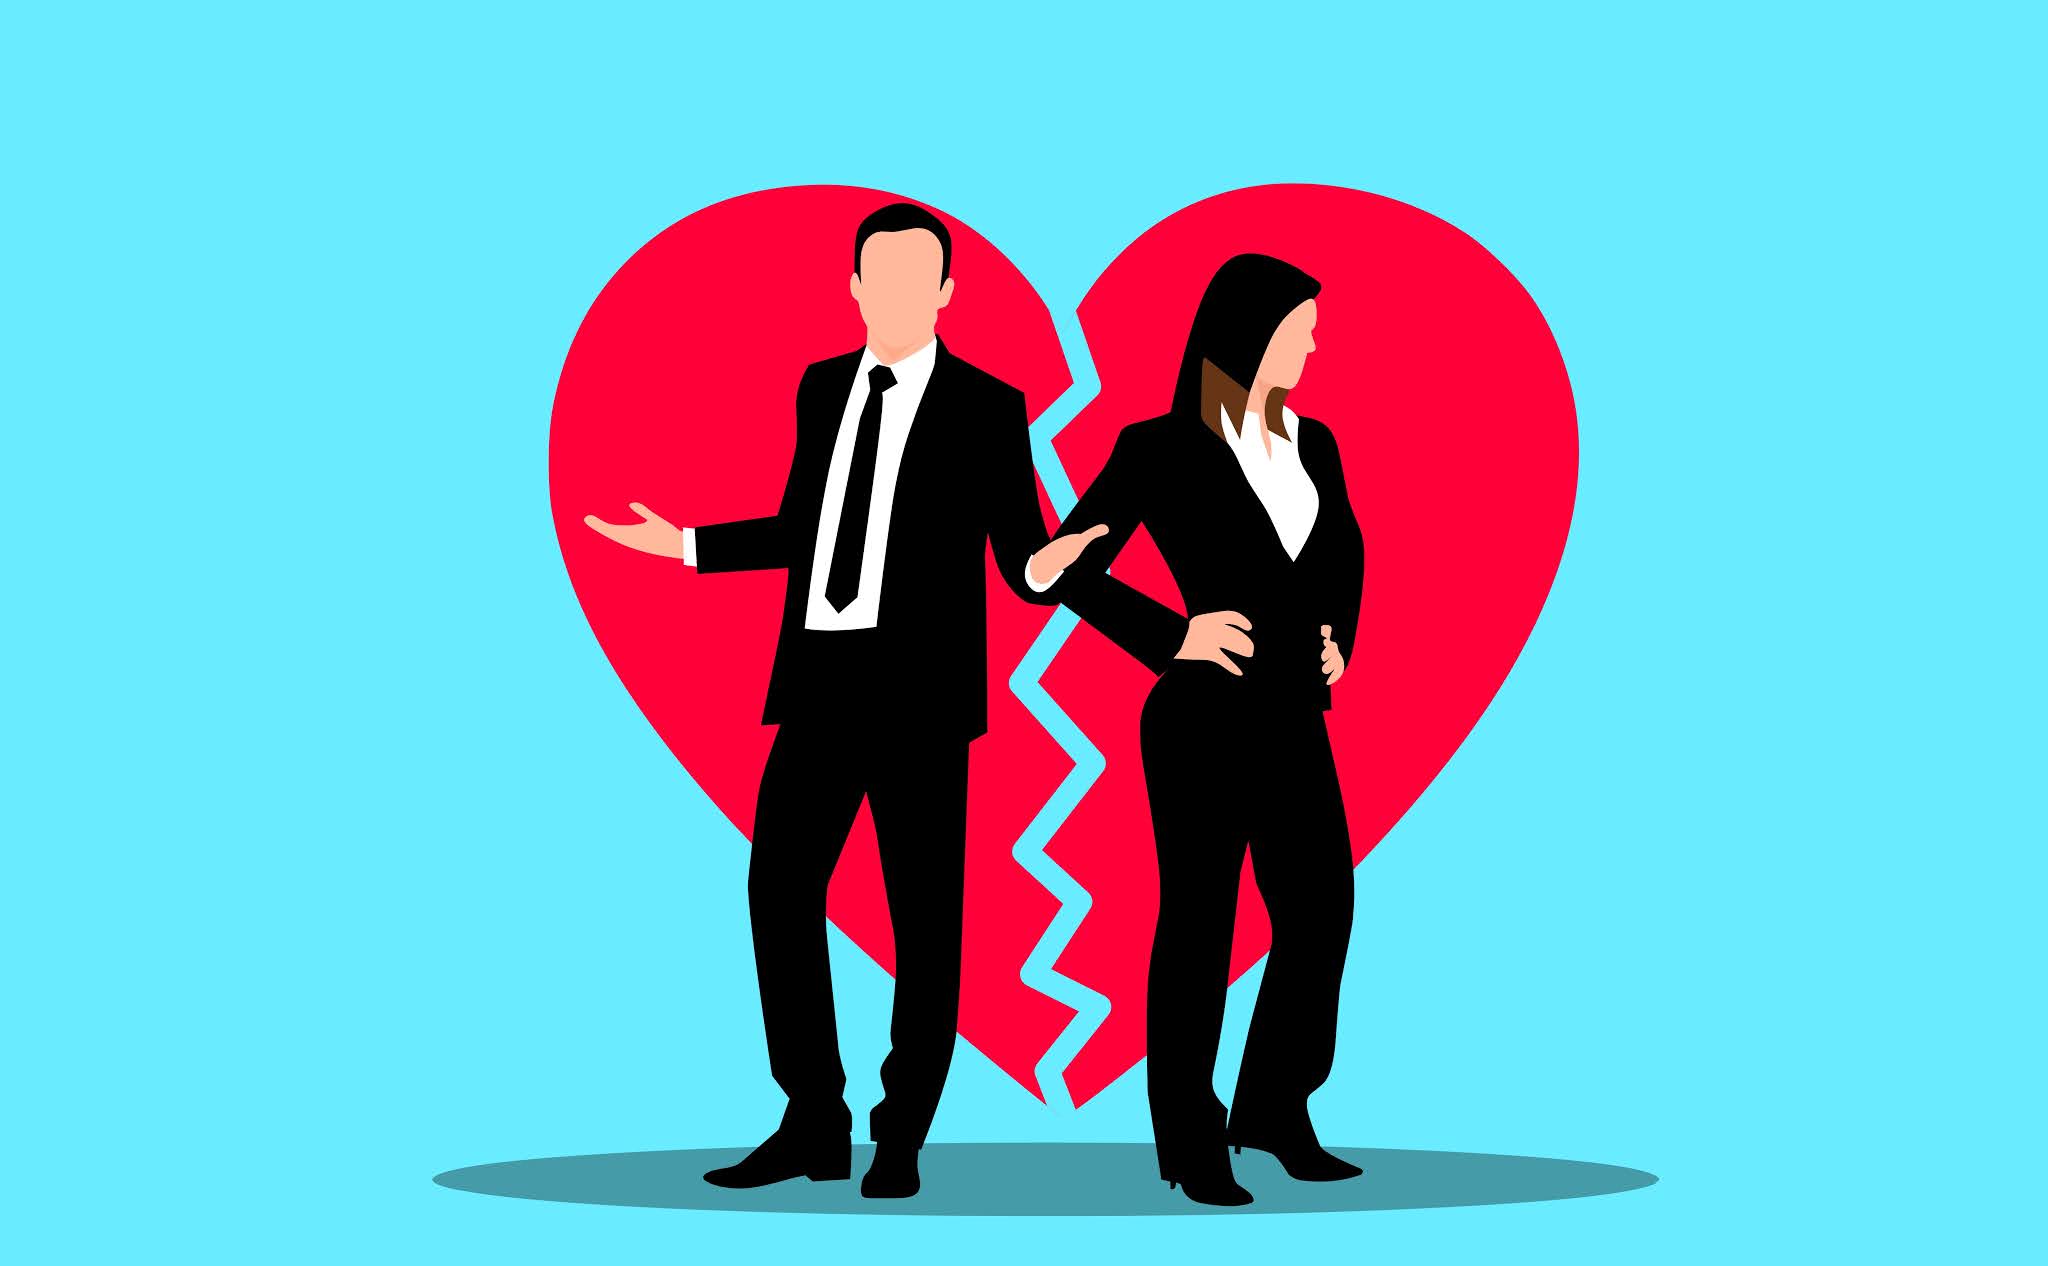 Illustration of divorce and relationship separation